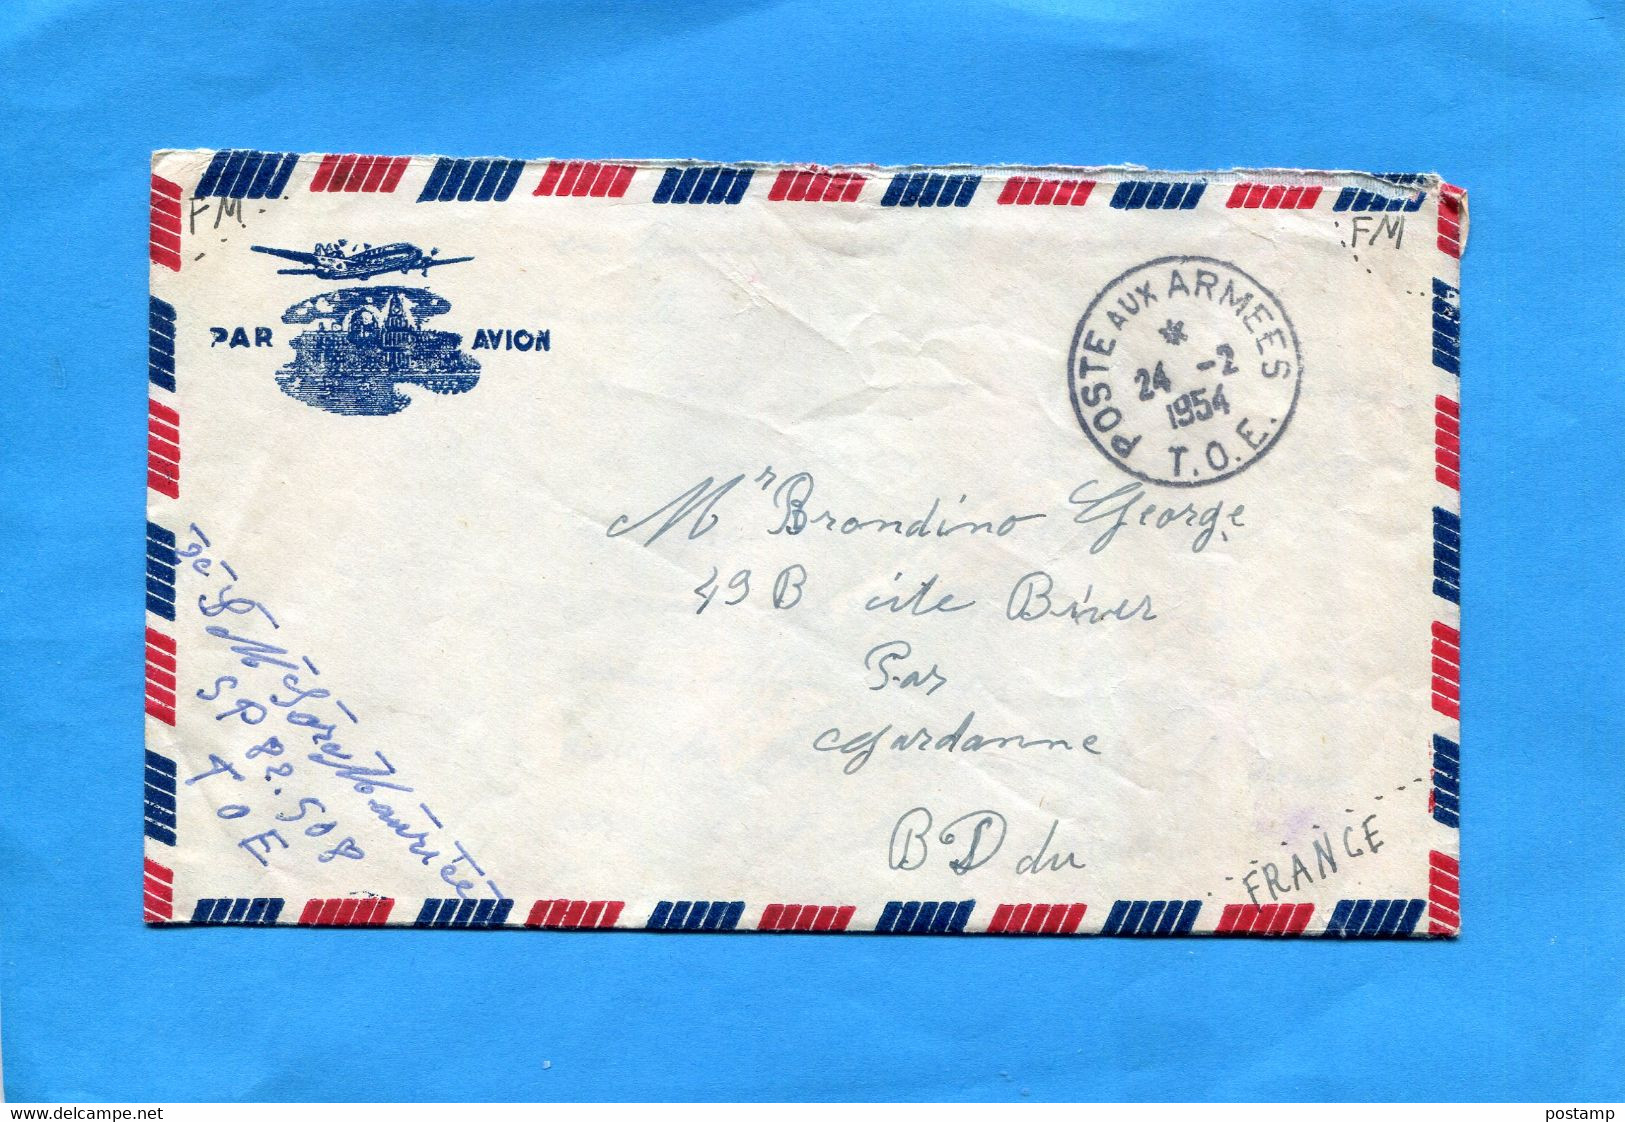 MARCOPHILIE Guerre D'indochine-lettre Cad Poste Aux Armées1954 T O E-expédiée Par SP82508 - Guerre D'Indochine / Viêt-Nam